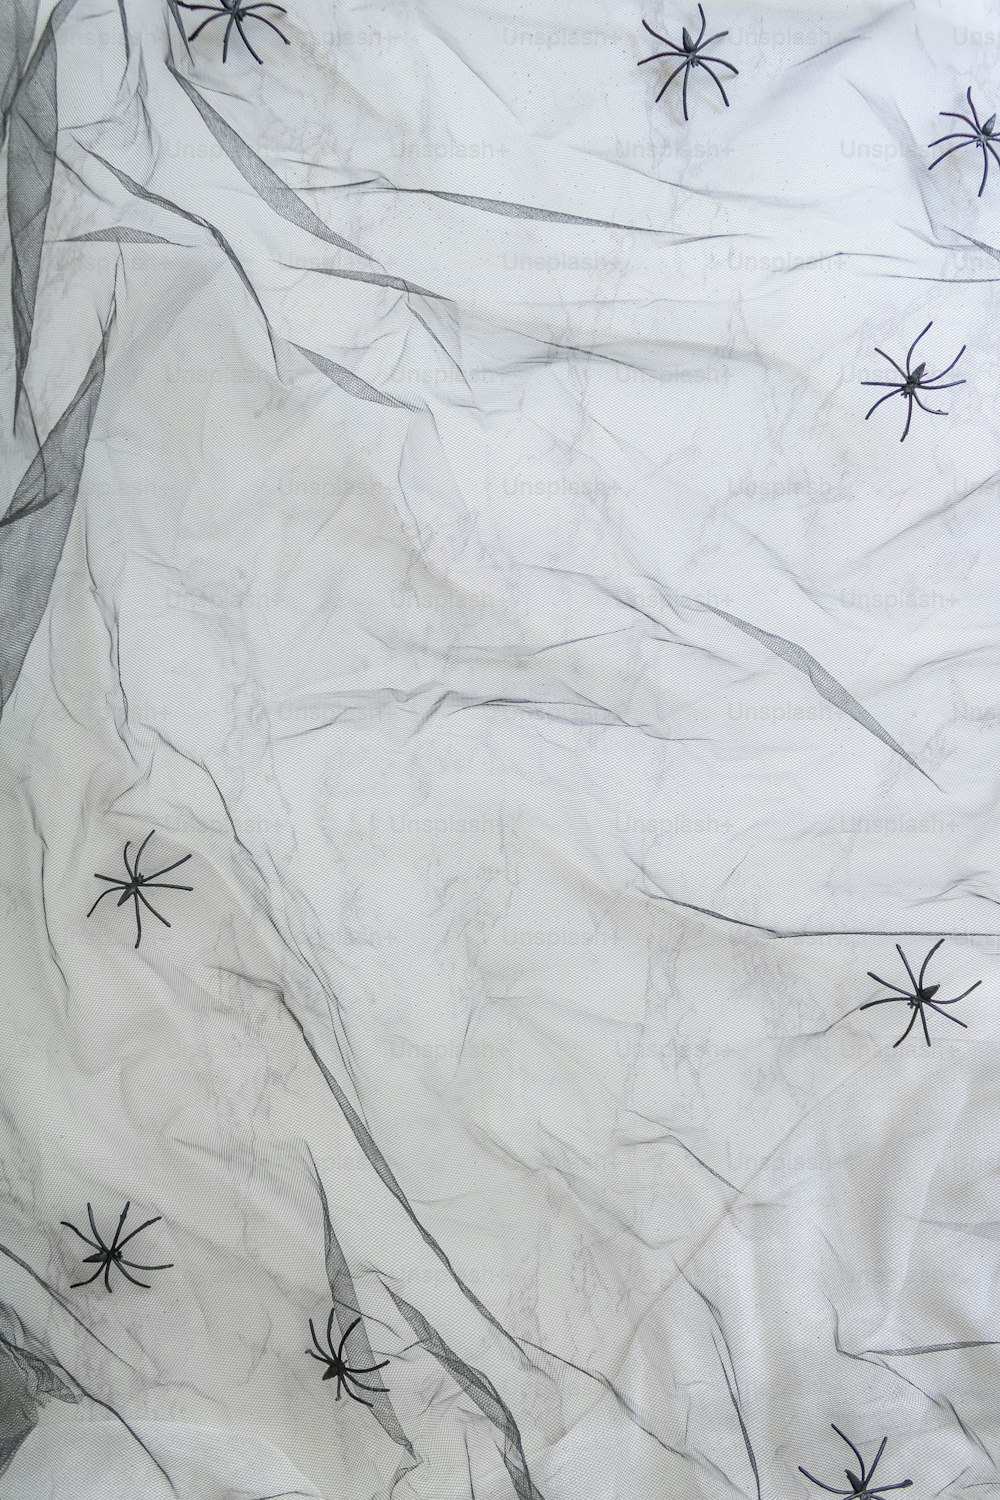 um lençol branco com teias de aranha pretas